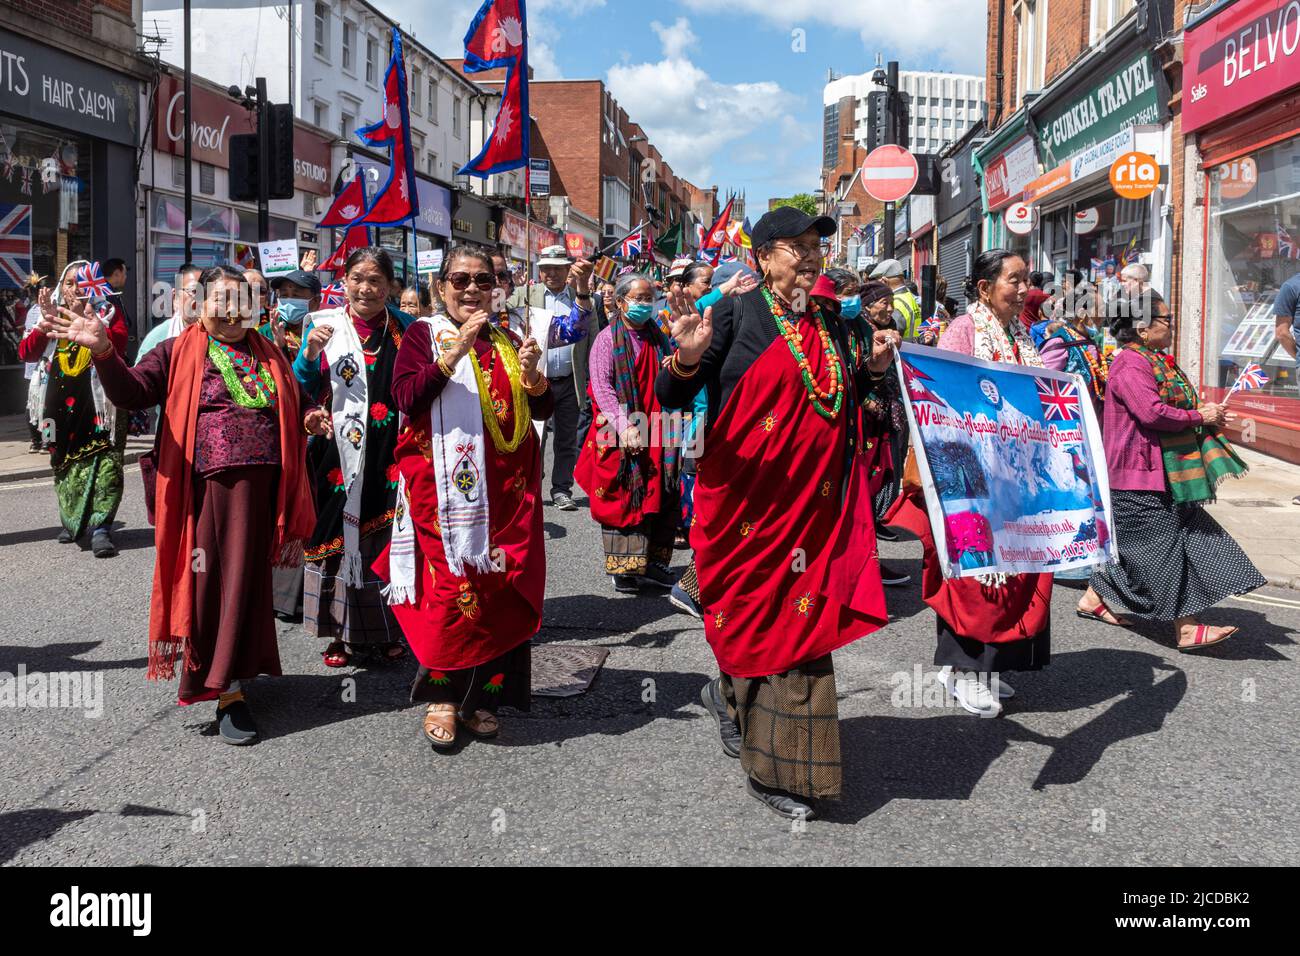 Nepalesen, Nepalesen Helfen Sie der Organisation Maddhat Shamua bei der Grand Parade am Victoria Day, einer jährlichen Veranstaltung in Aldershot, Hampshire, England, Großbritannien Stockfoto